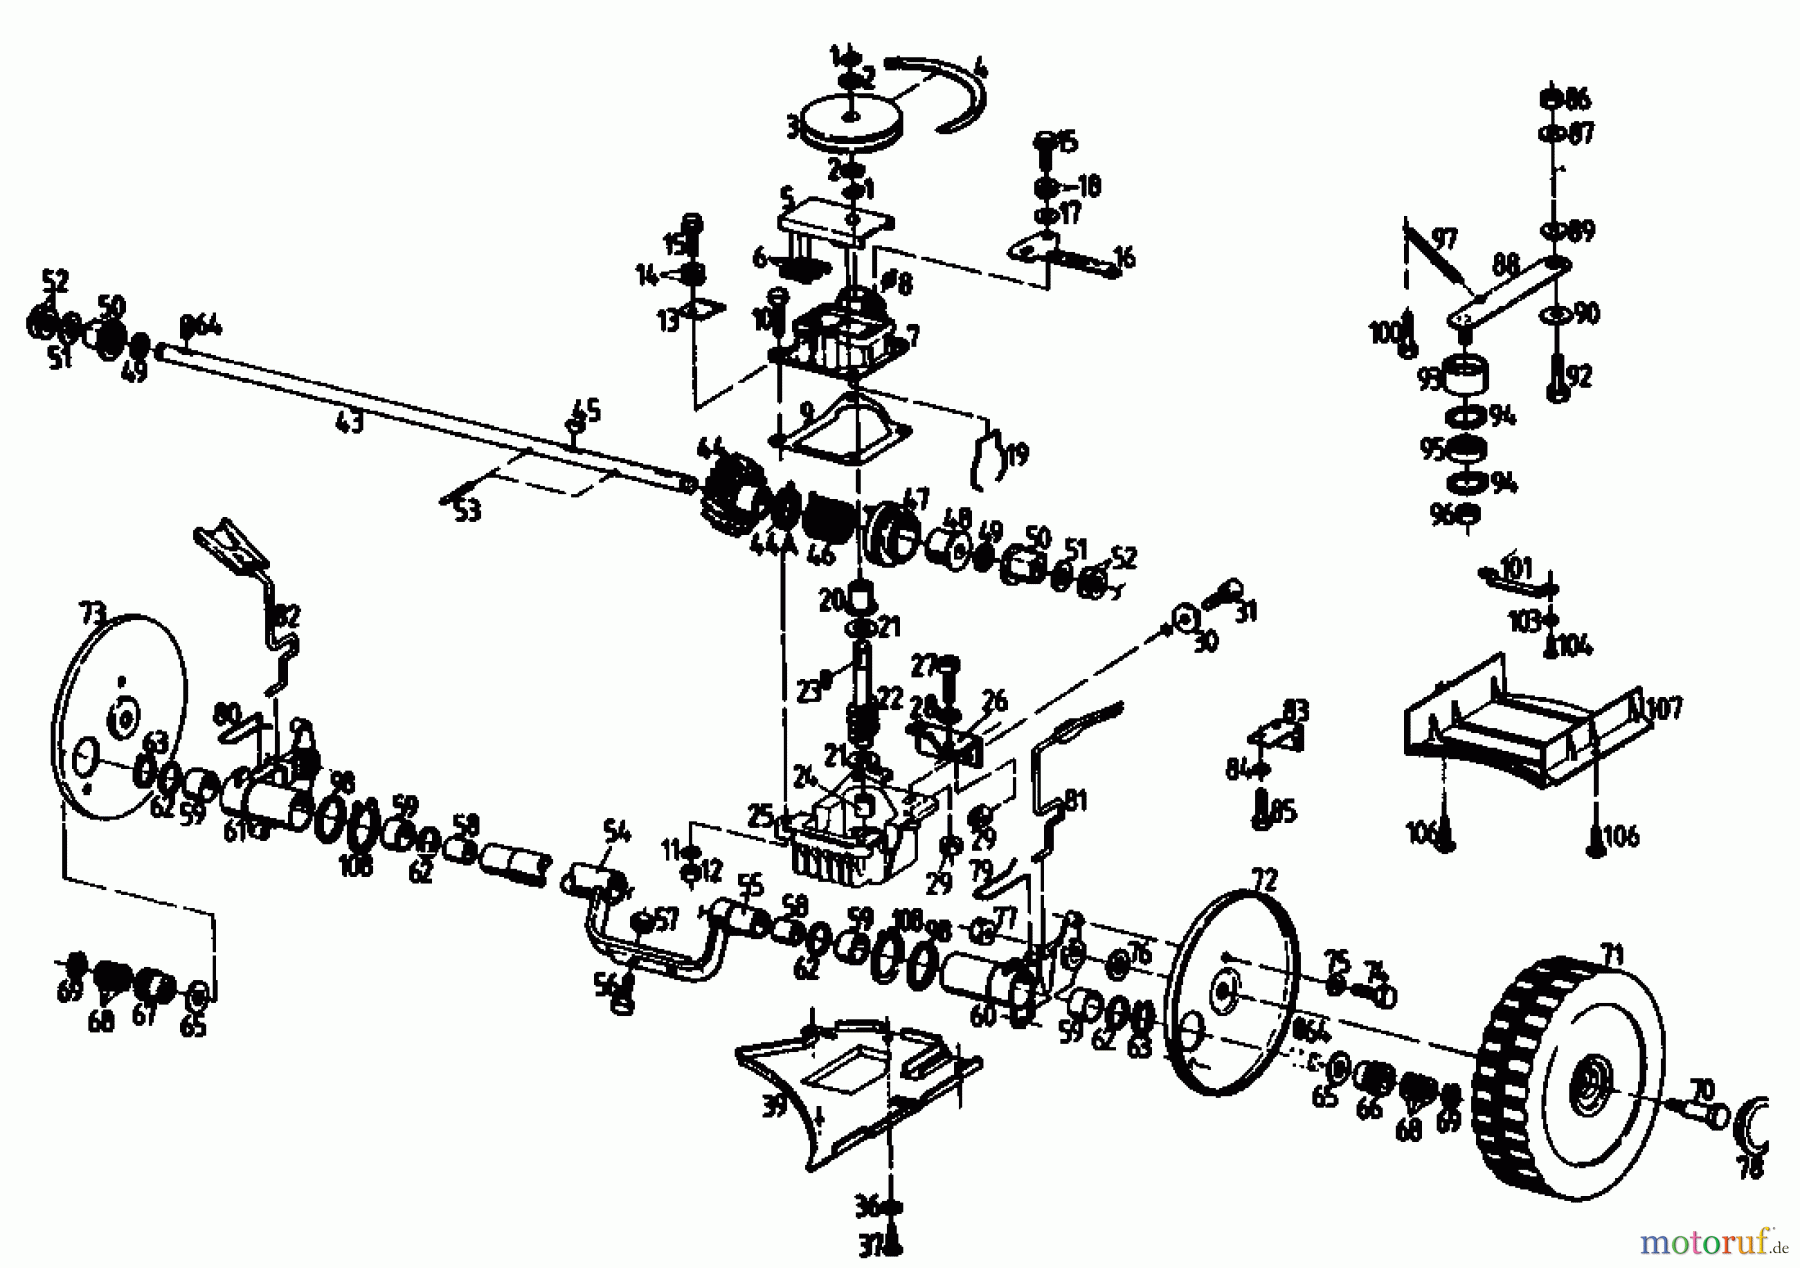  Gutbrod Motormäher mit Antrieb HB 47 R-4 BSE 04001.02  (1992) Getriebe